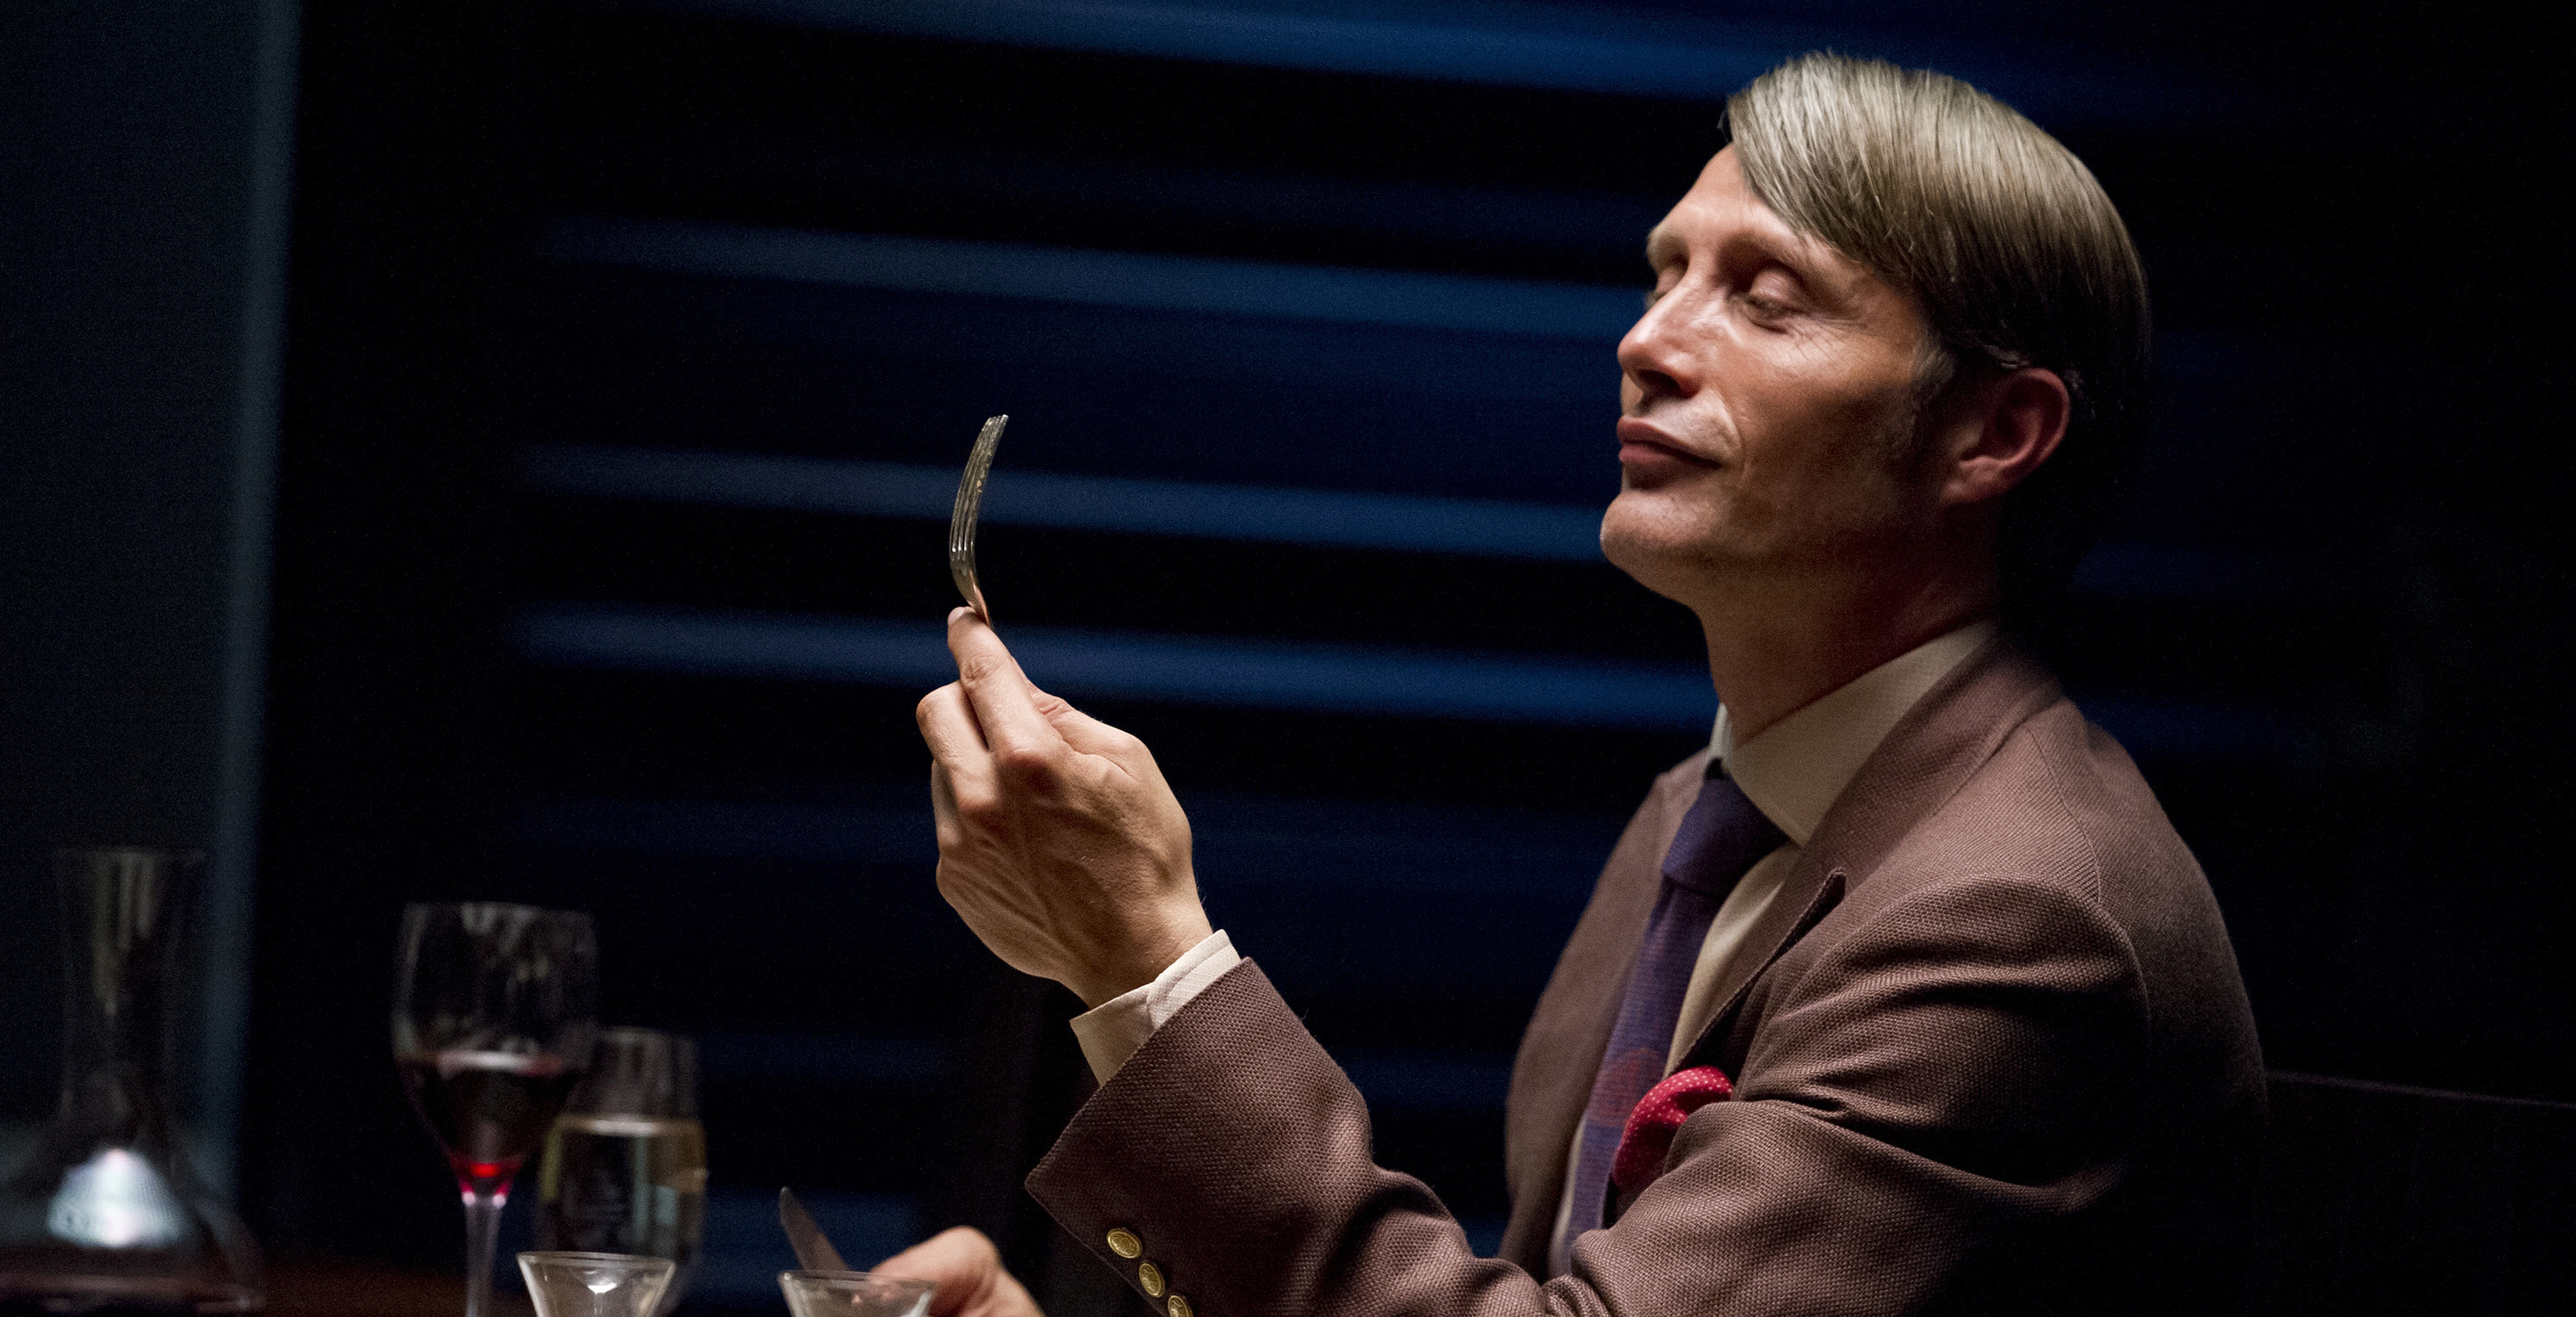 NBC canceló “Hannibal” luego de tres temporadas